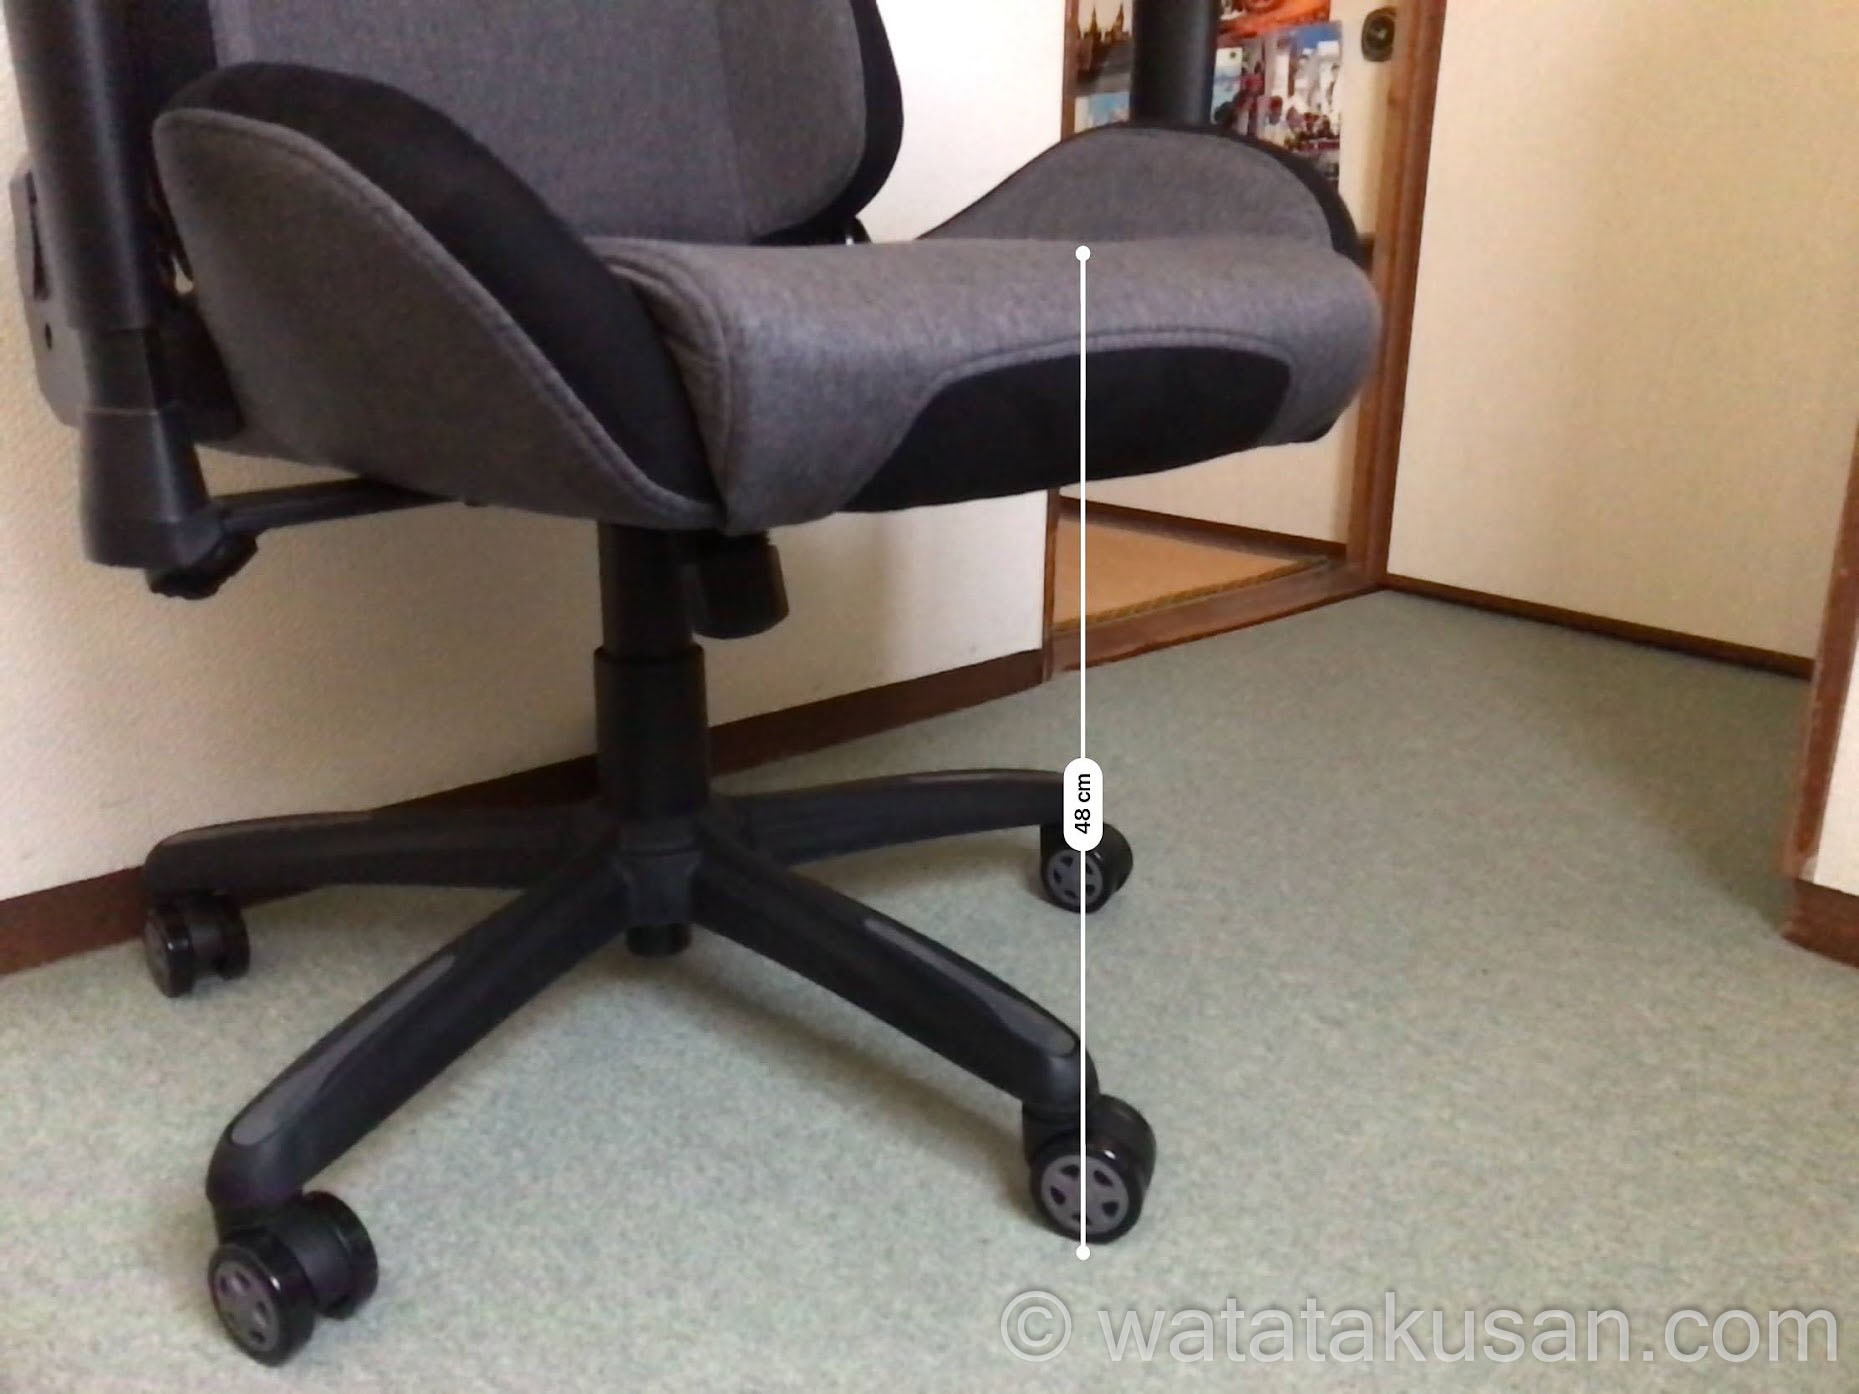 GTRACING（ACE S1）の椅子の高さを写真つきで解説【身長約178cmの男性の座り心地の感想あり】